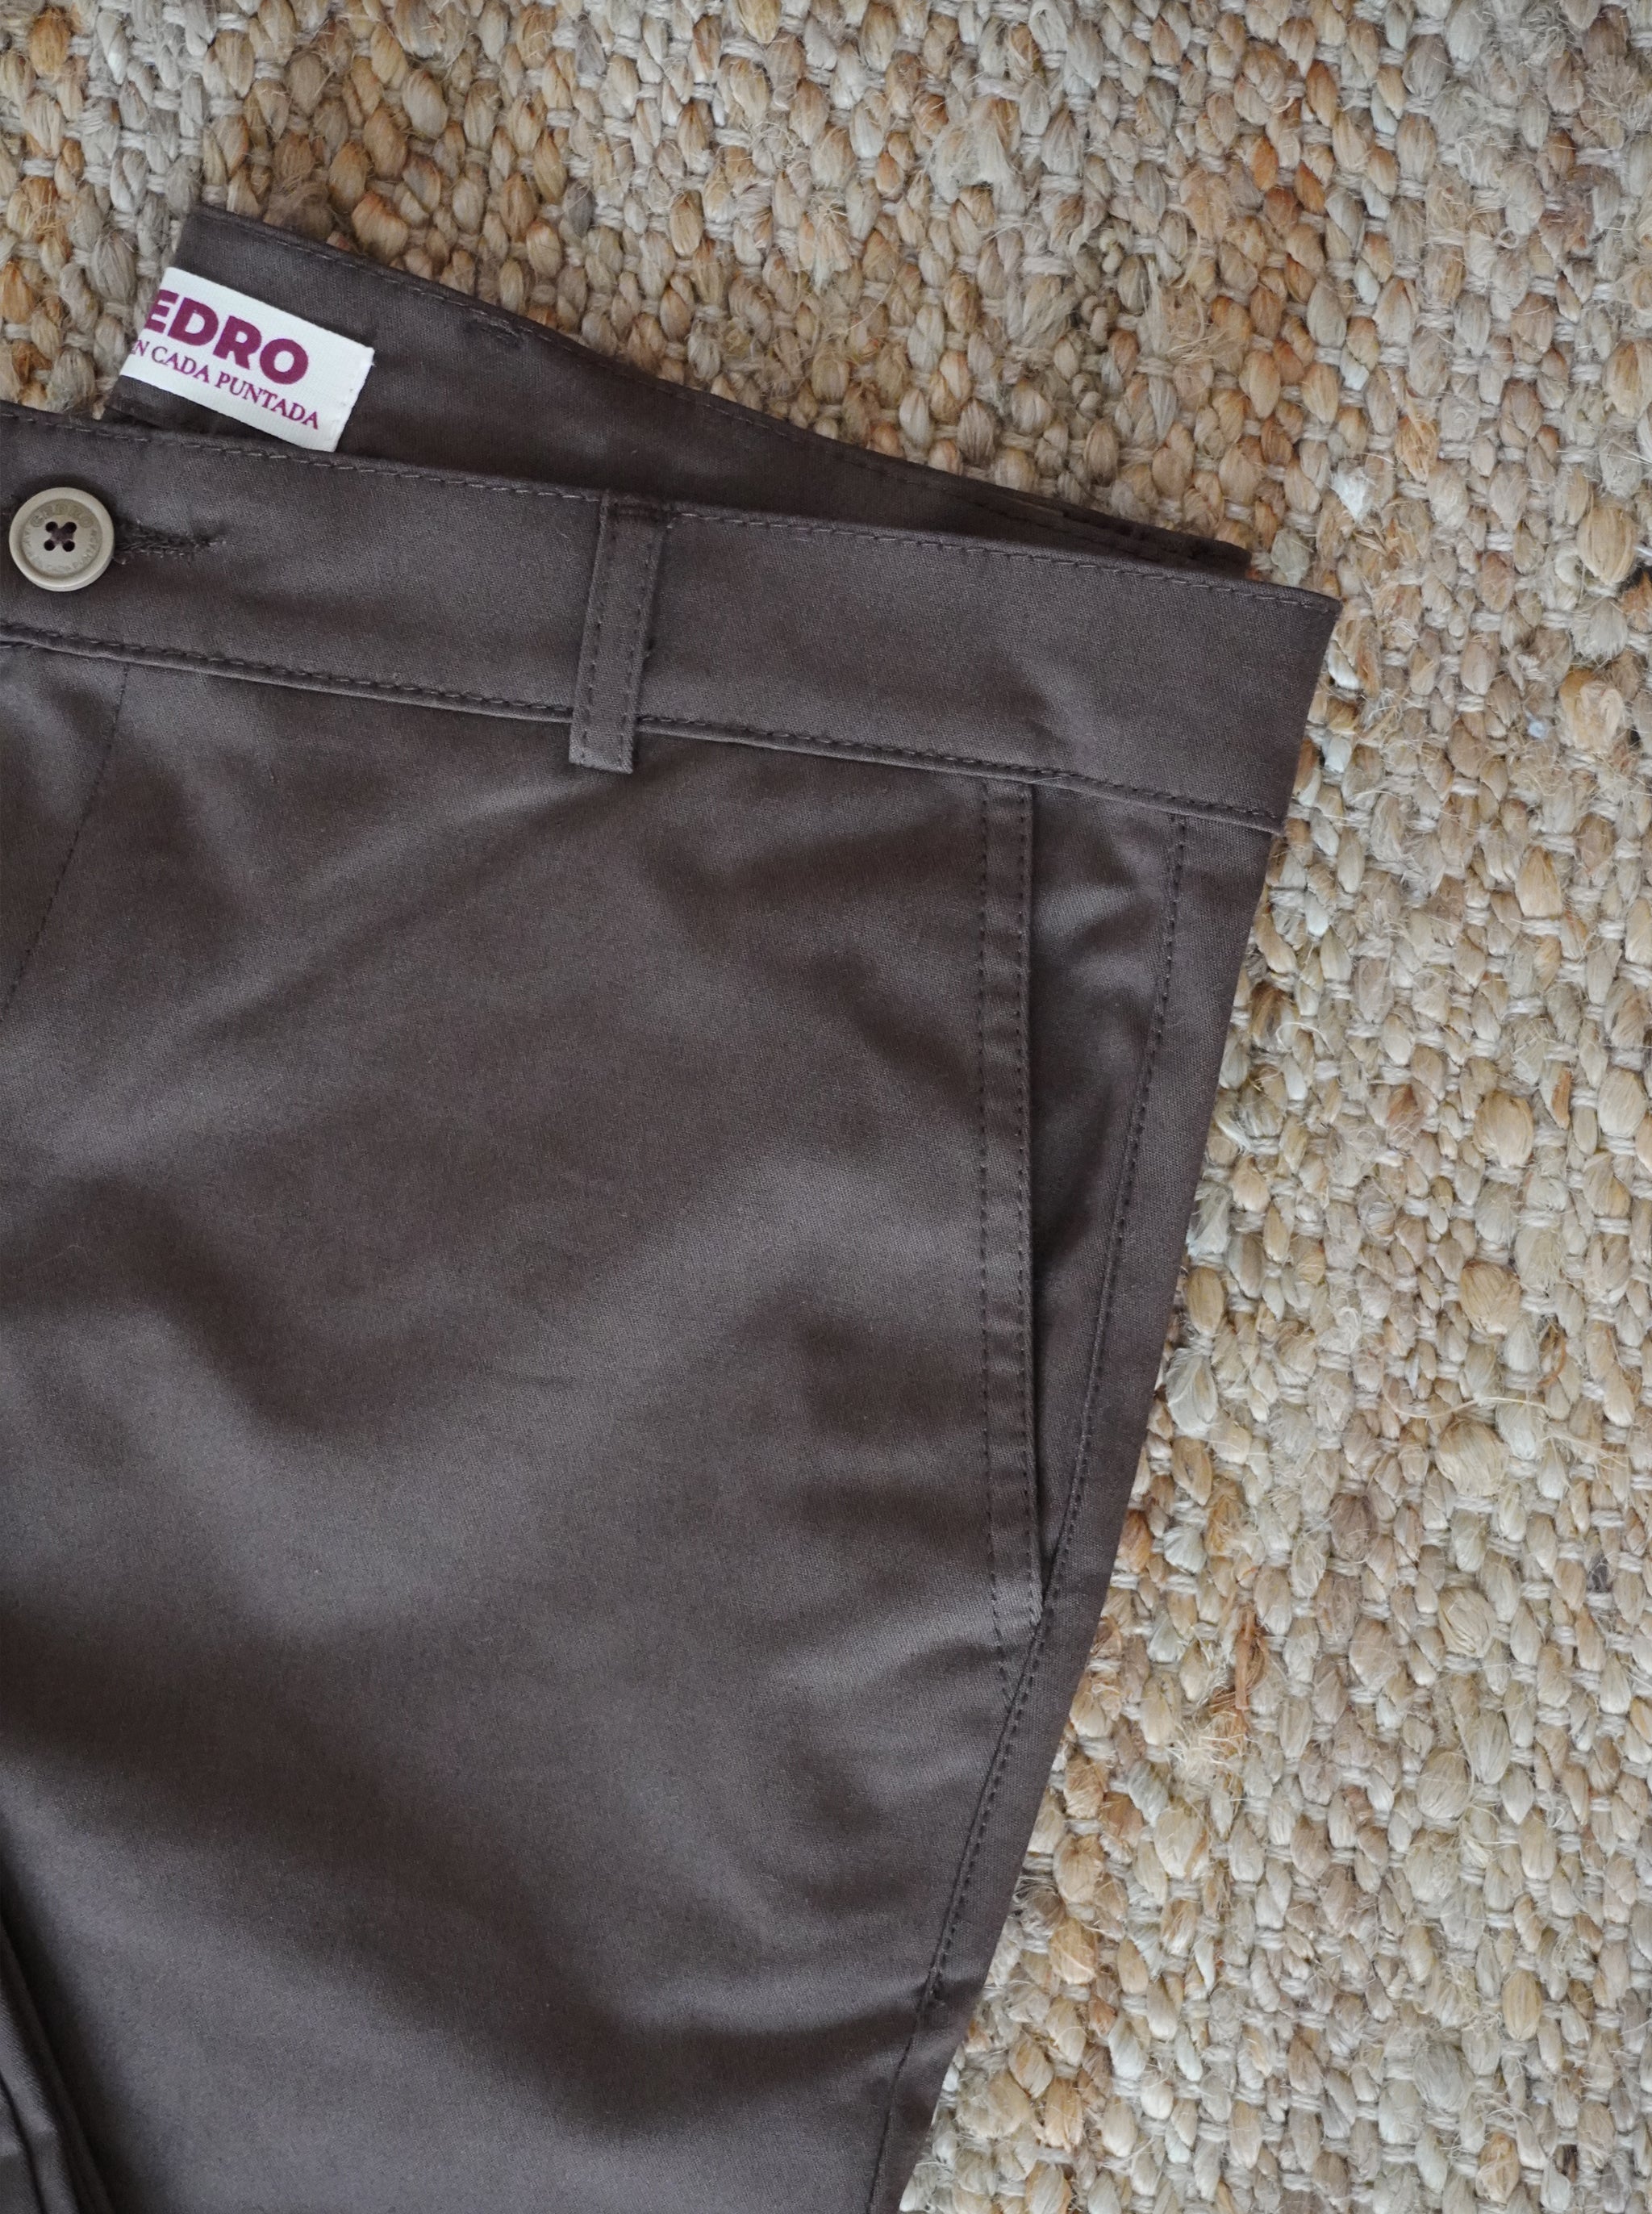 Pantalón de dril para hombres color chocolate, chino pants, moda masculina